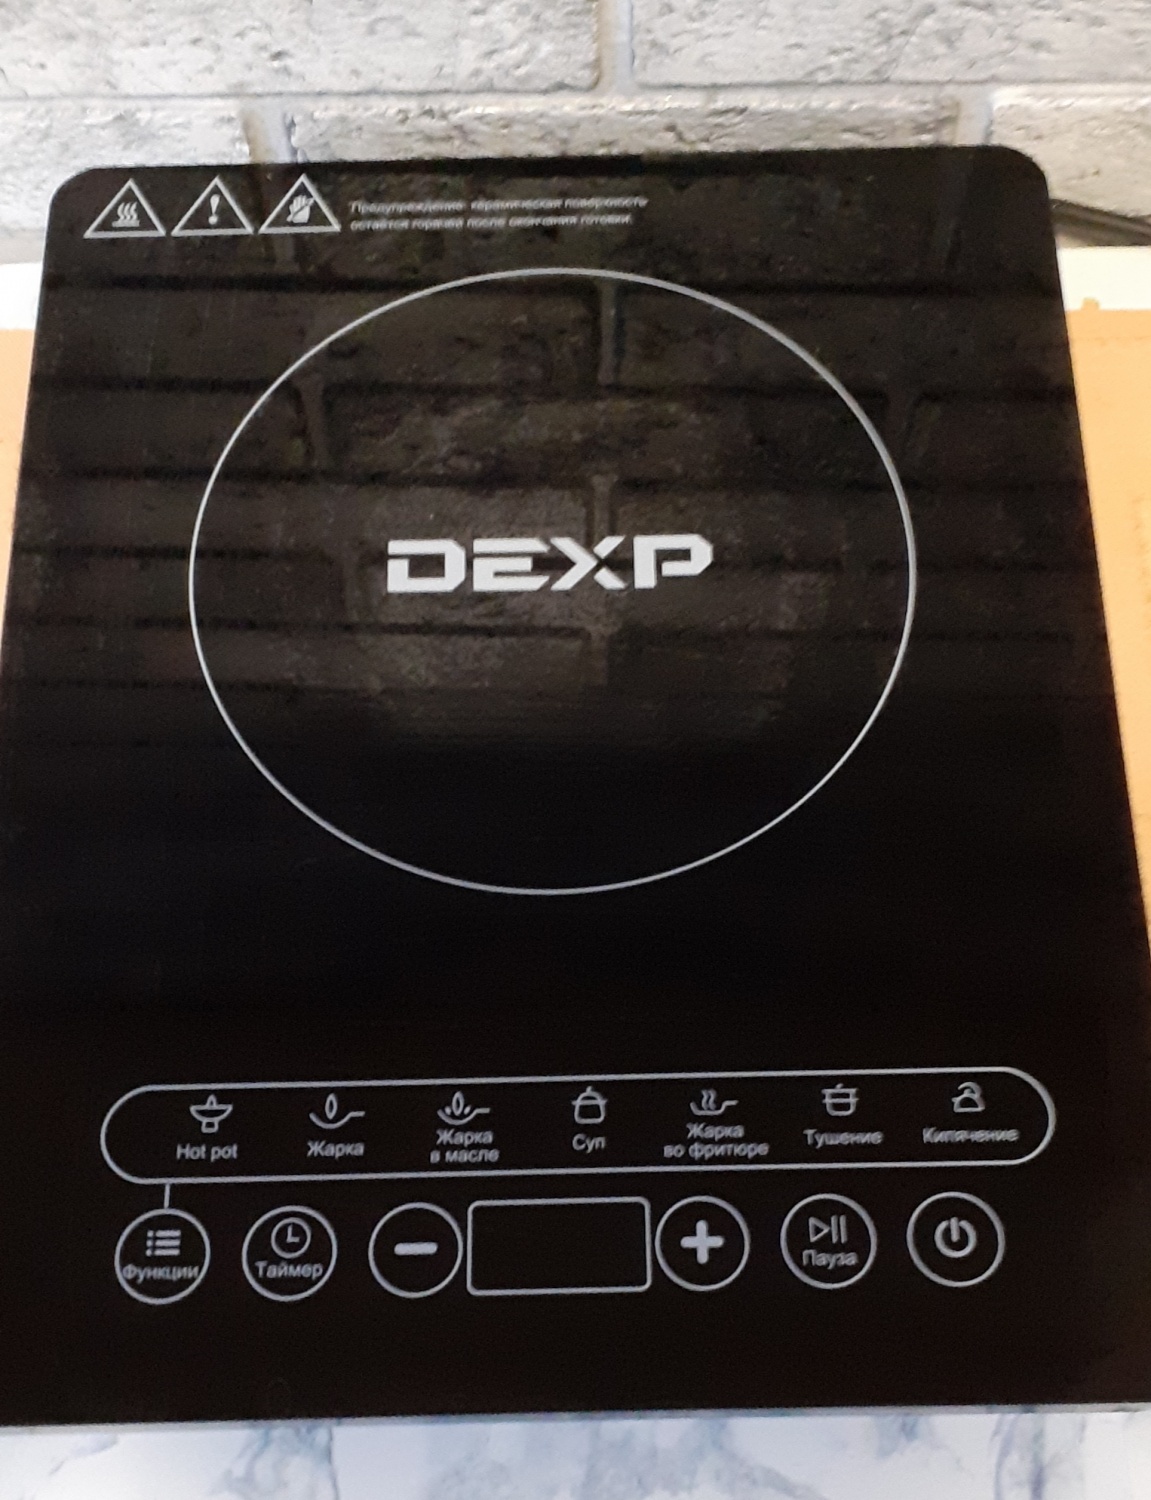 Как включить варочную панель dexp. Плитка индукционная DEXP ins-2000. Электрическая плита DEXP ins-2000. Индукционная плита Декс. Плита компактная электрическая DEXP ins-2000.